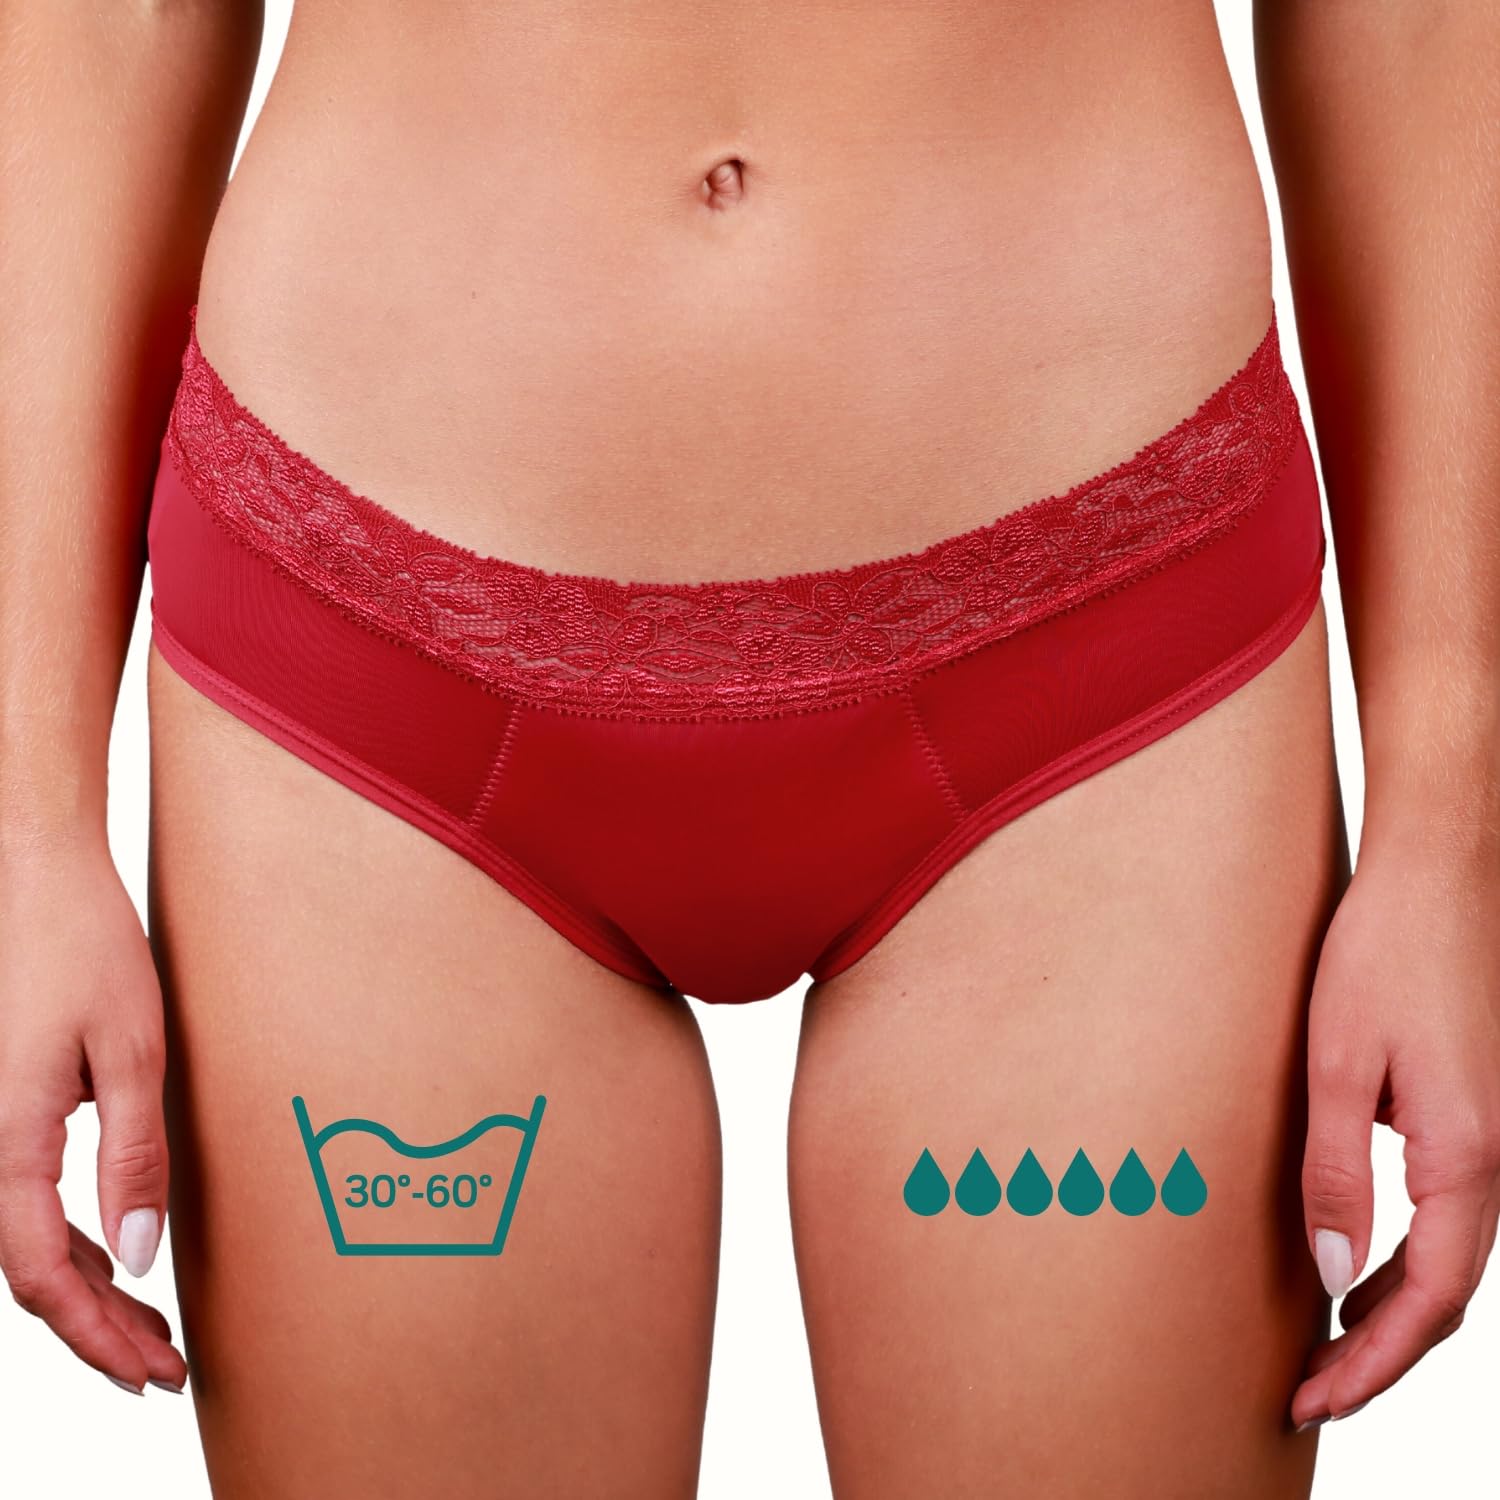 Taynie Queen ultra Perioden Unterwäsche - auslaufsichere & atmungsaktive Menstruationsunterwäsche - Unterhosen Damen ersetzt 6 Tampons, Periodenslip Tragedauer bis 12 Std, waschbar bis 60°C (36, Rot)